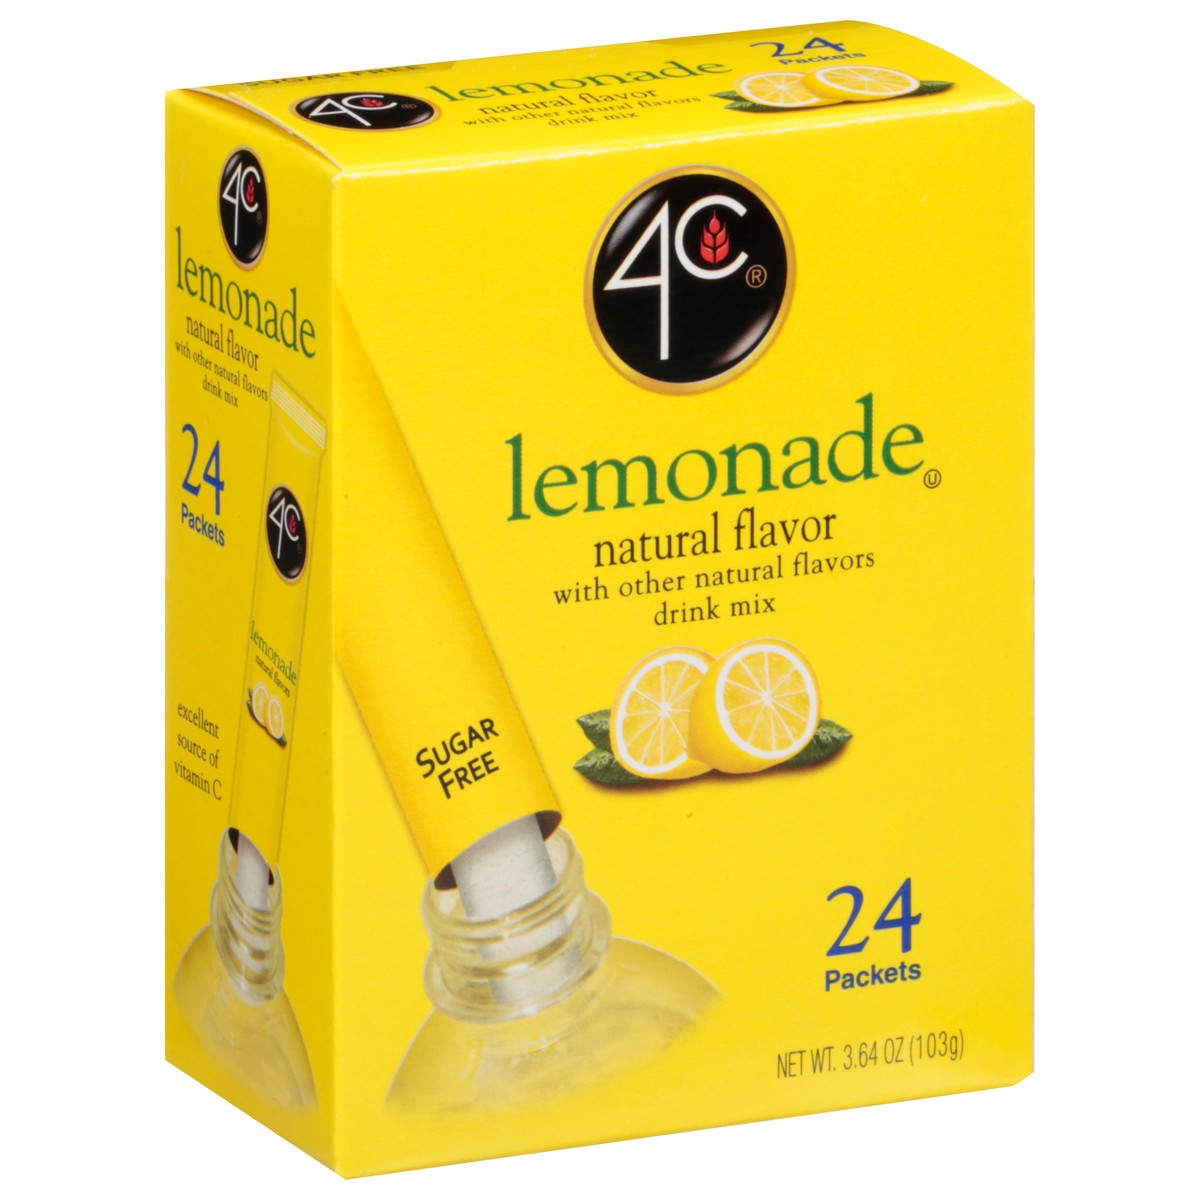 slide 9 of 14, 4C Drink Mix Sgr/Free Lemonade 24Ct, 24/3.64o